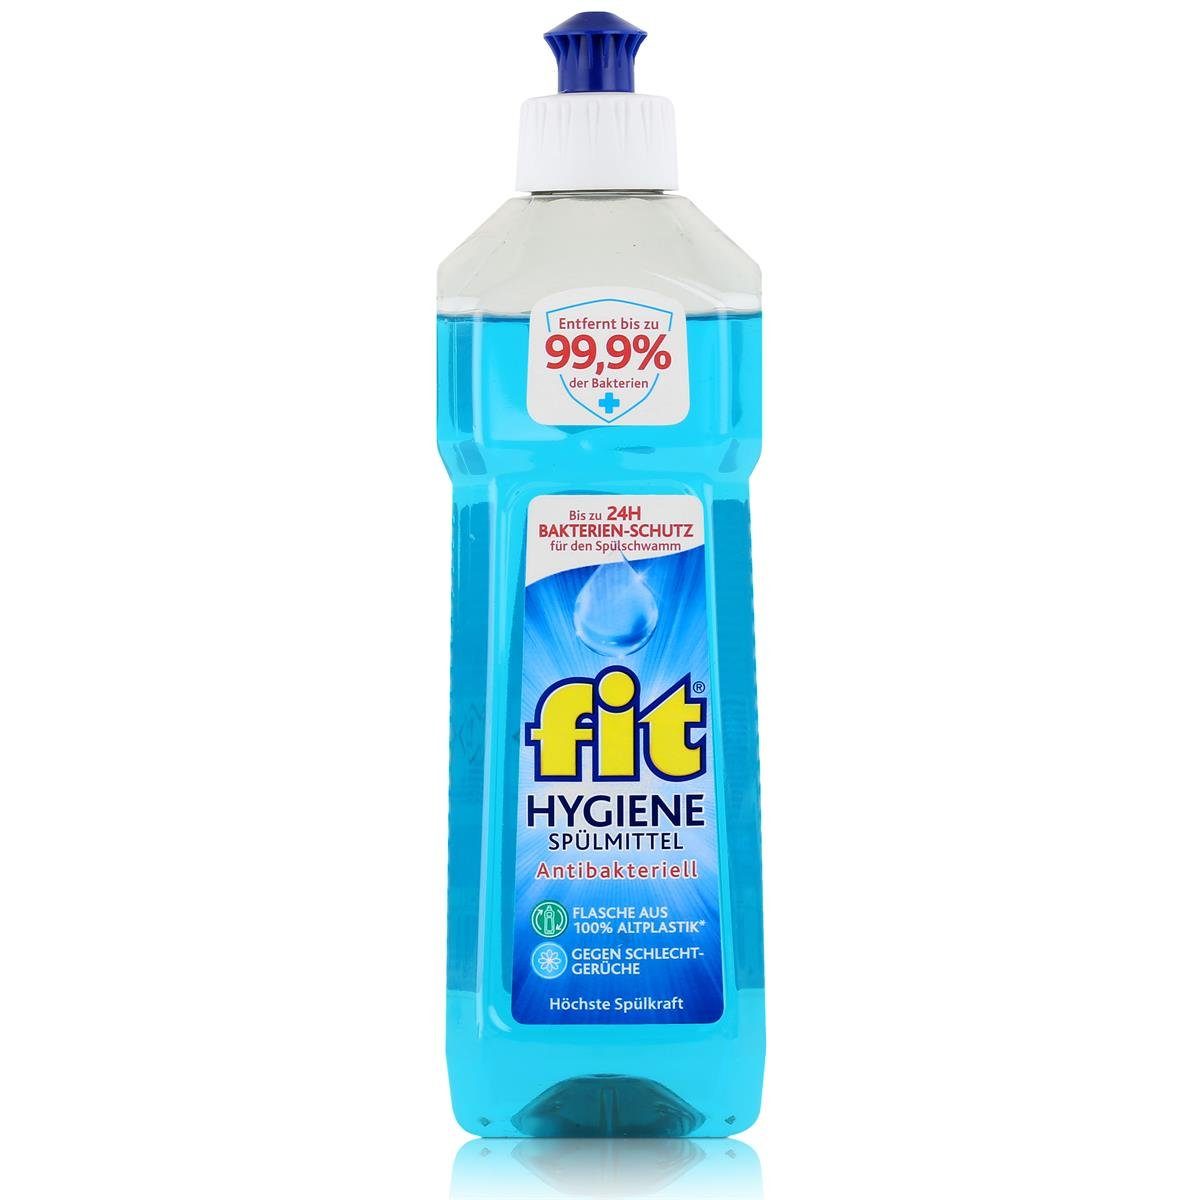 FIT fit Spülmittel Hygiene Anti. 500ml - Höchste Spülkraft (1er Pack) Geschirrspülmittel